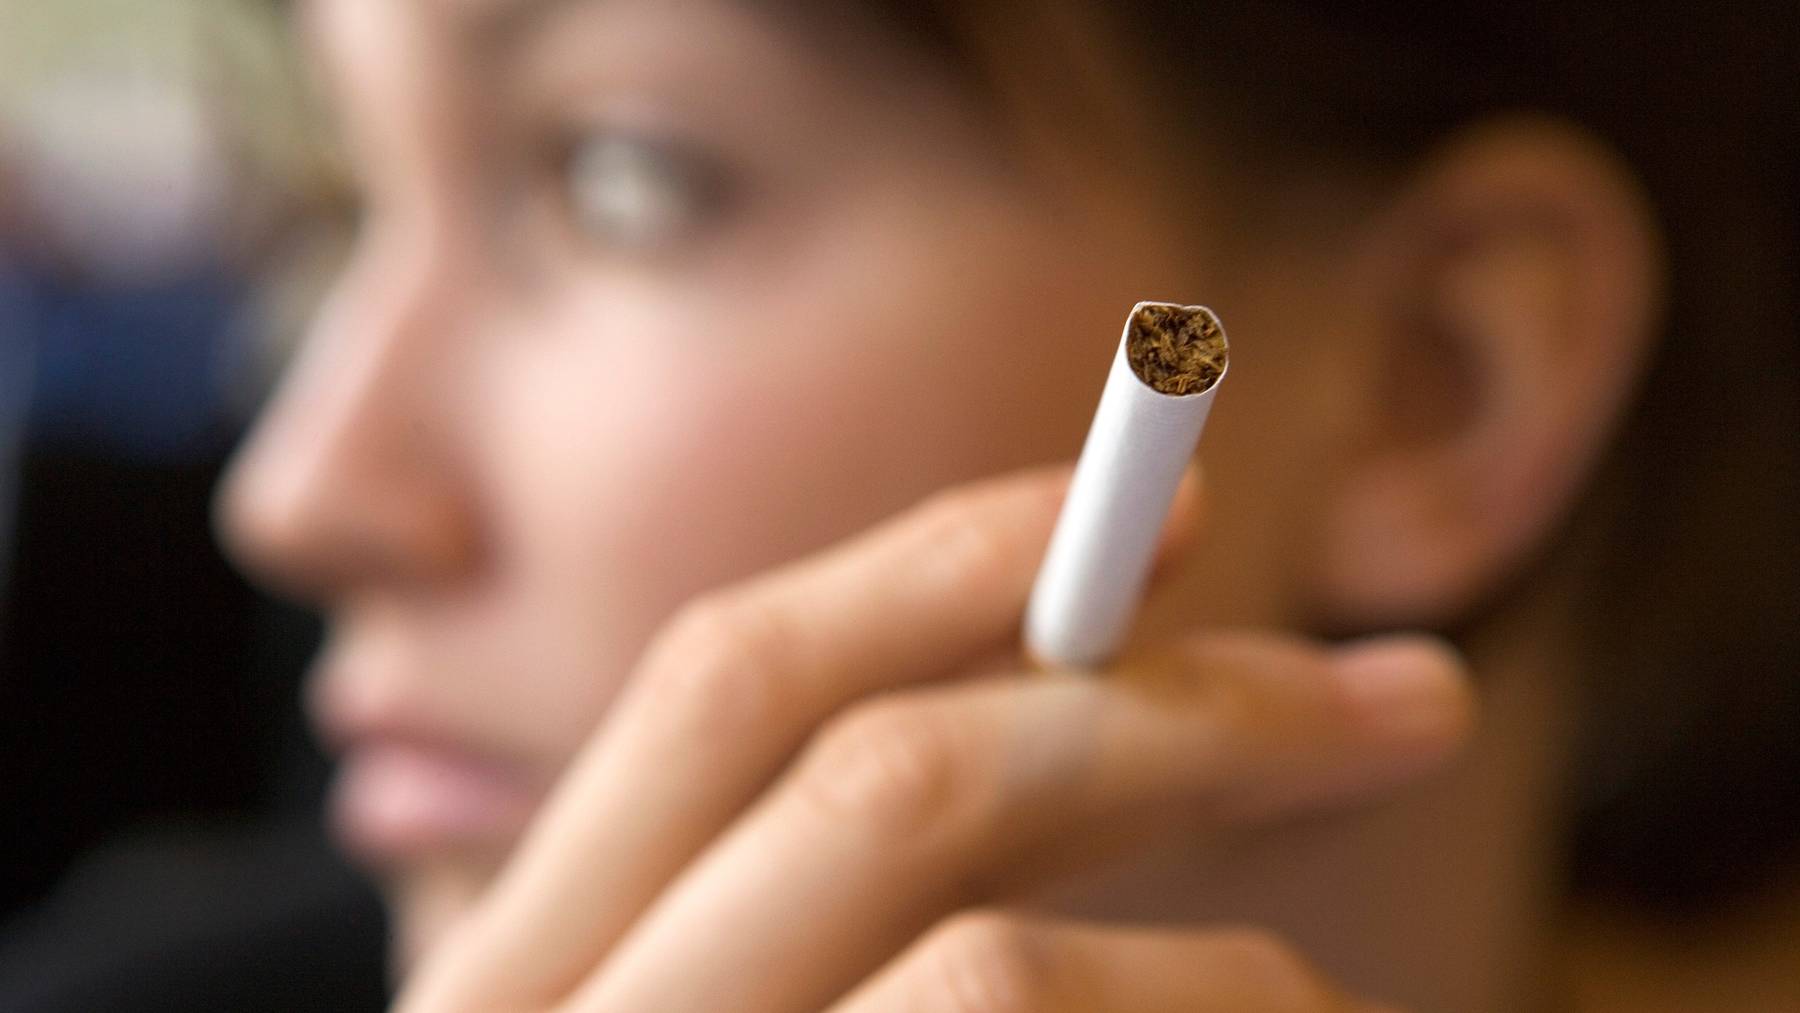 Minderjährige sollen in Zukunft keine Zigaretten mehr kaufen dürfen. Darin ist sich der Nationalrat einig. (Symbolbild)